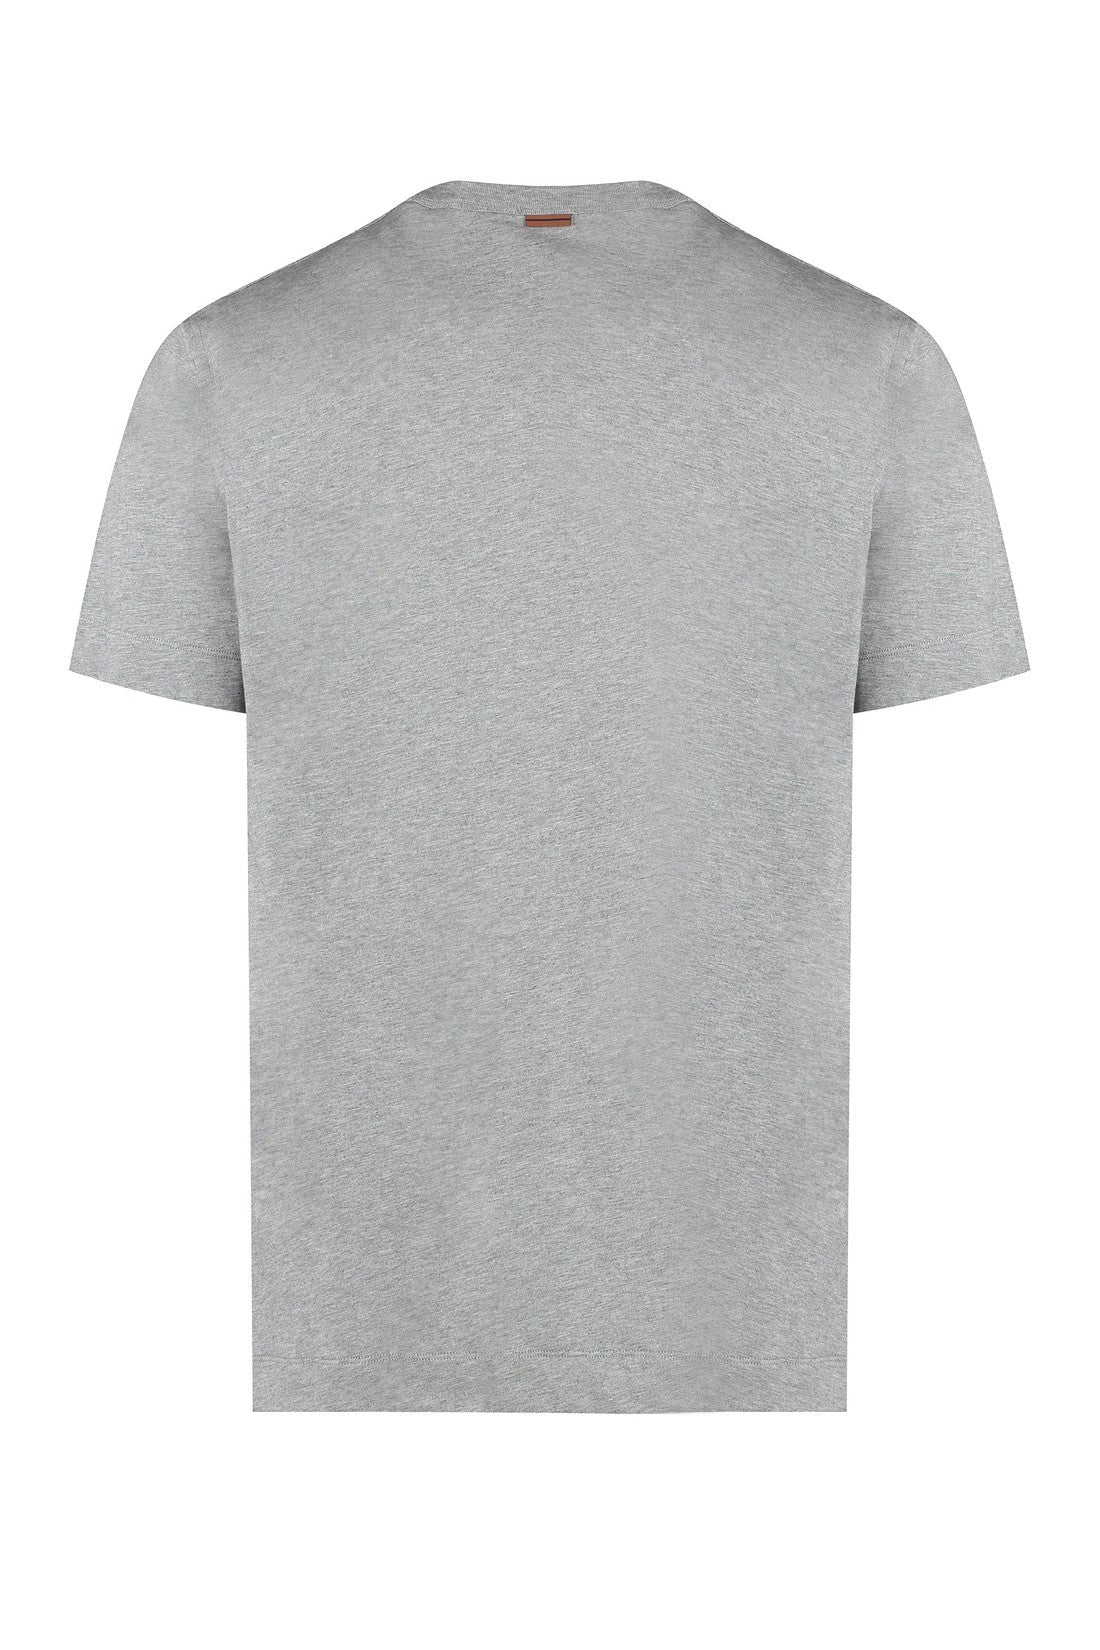 Zegna-OUTLET-SALE-Logo cotton t-shirt-ARCHIVIST